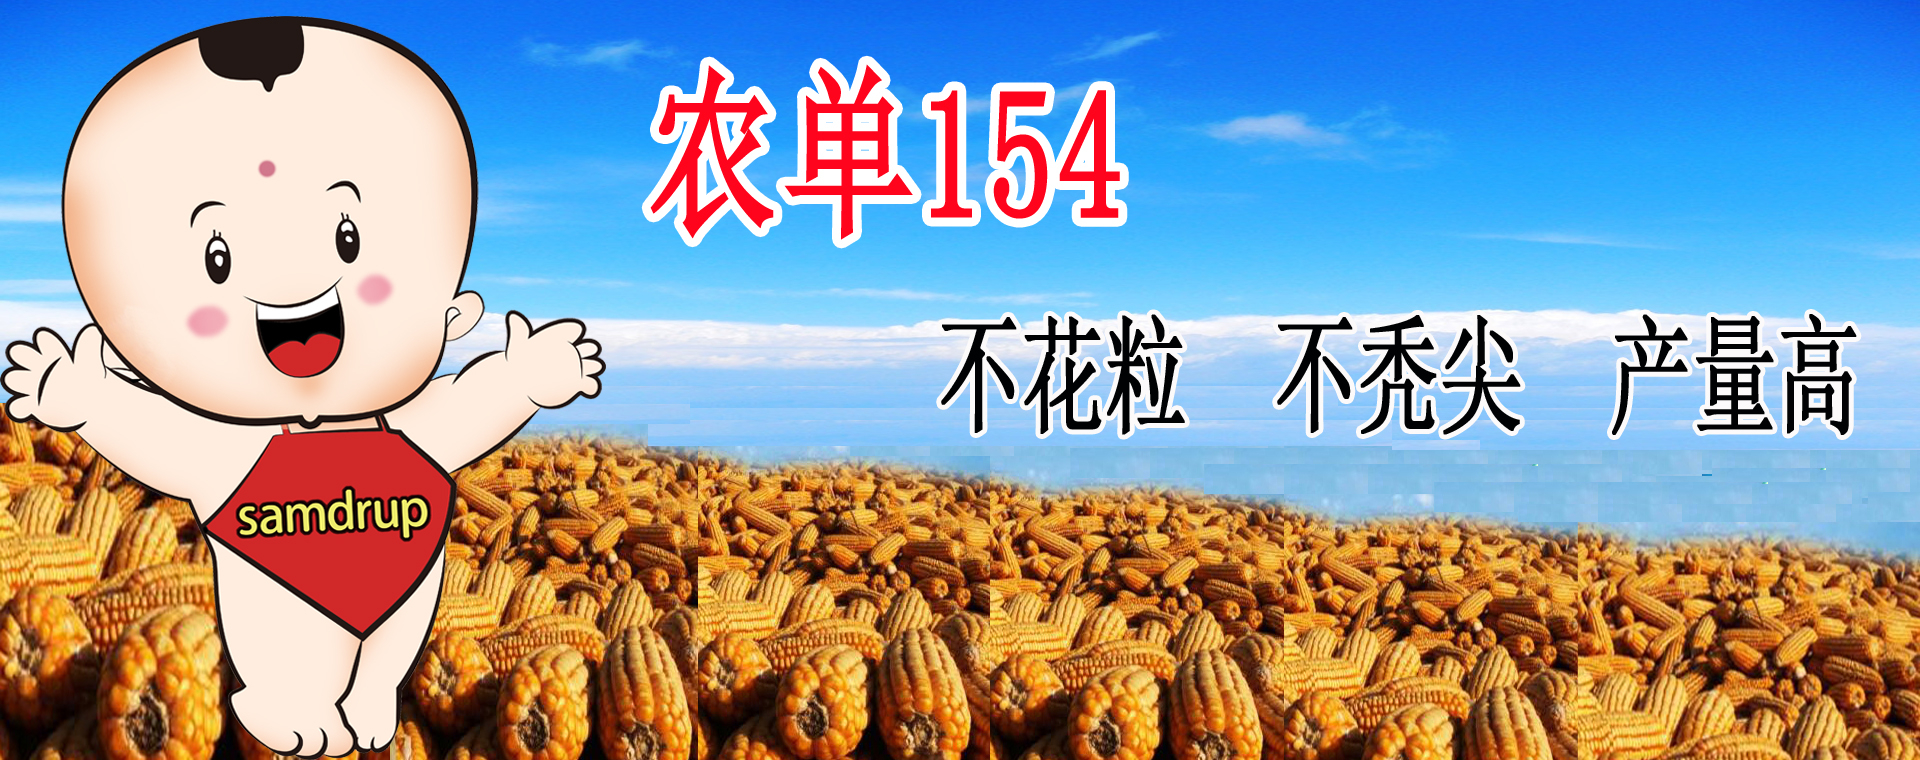 第8届贵州·遵义世界辣椒博览会优异种类评选活动举行